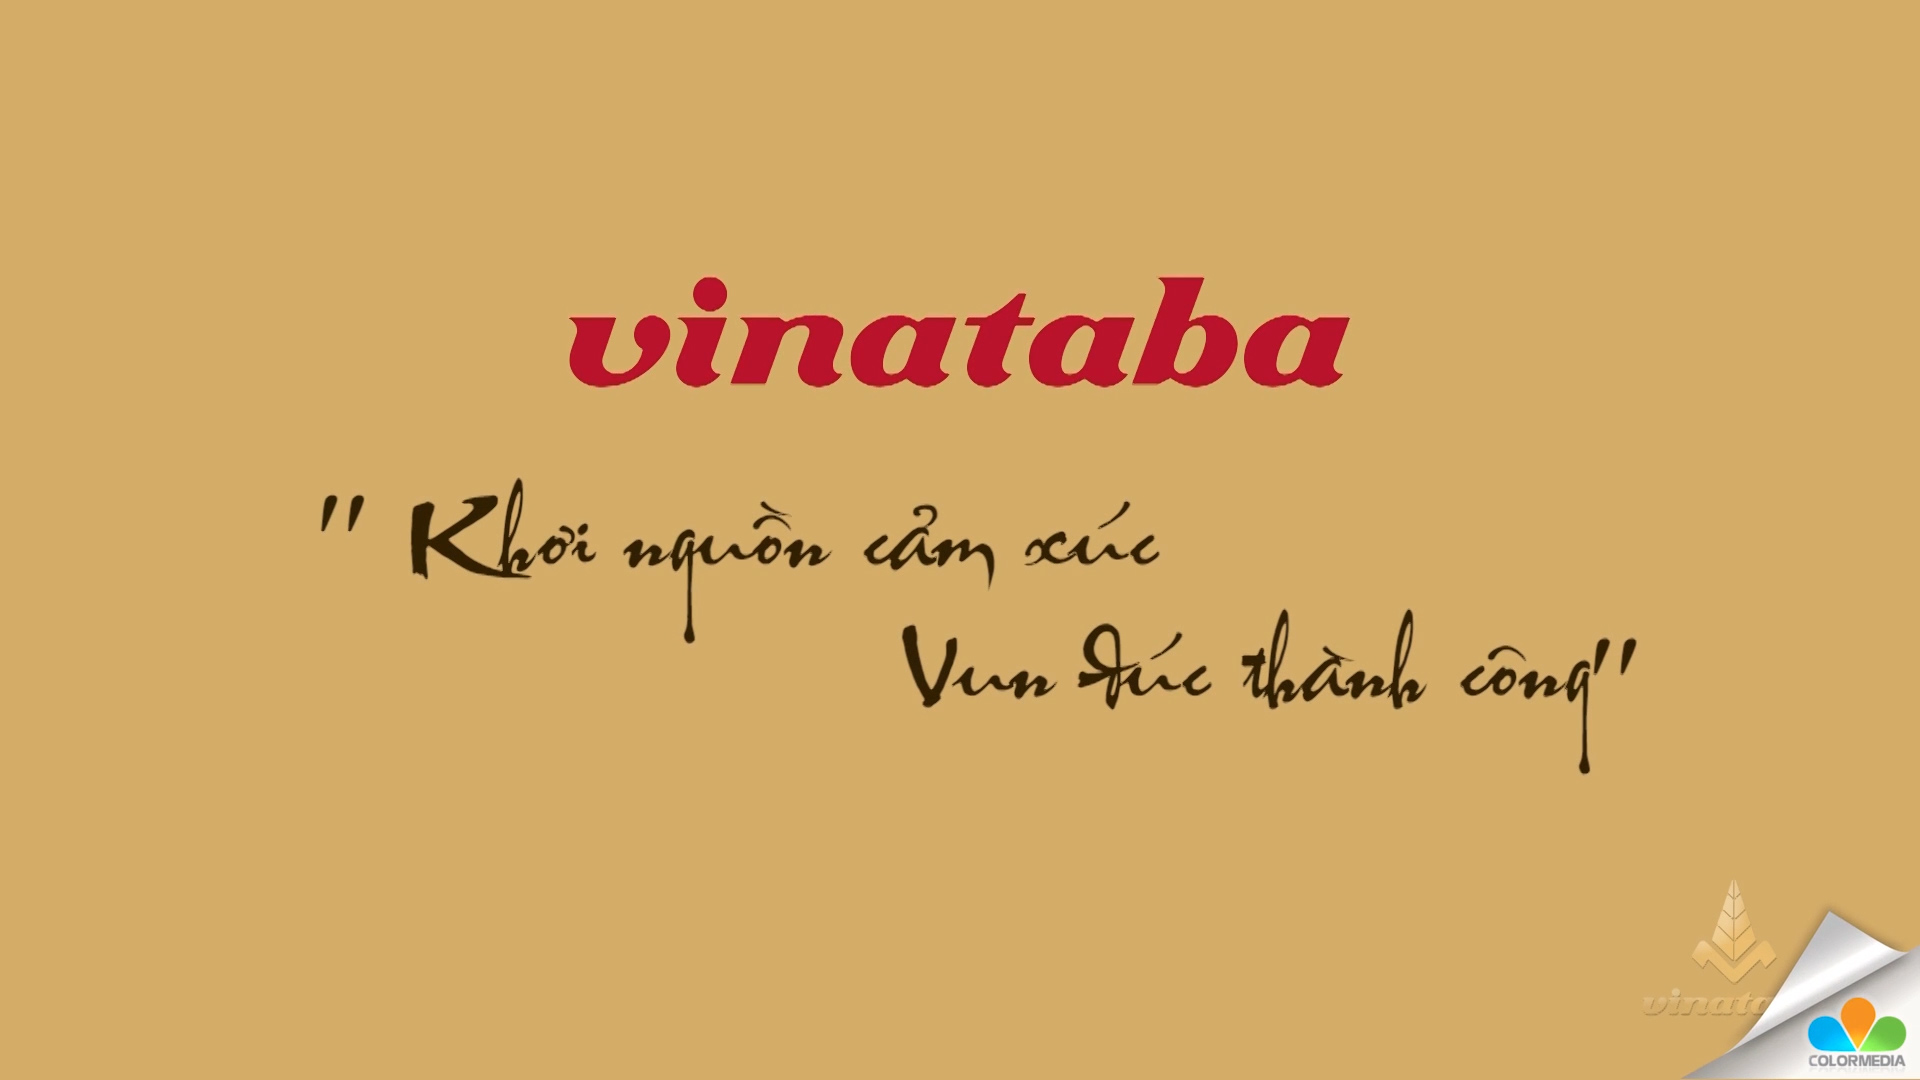 [Thuốc lá Vinataba] Khơi nguồn cảm xúc, vun đúc thành công